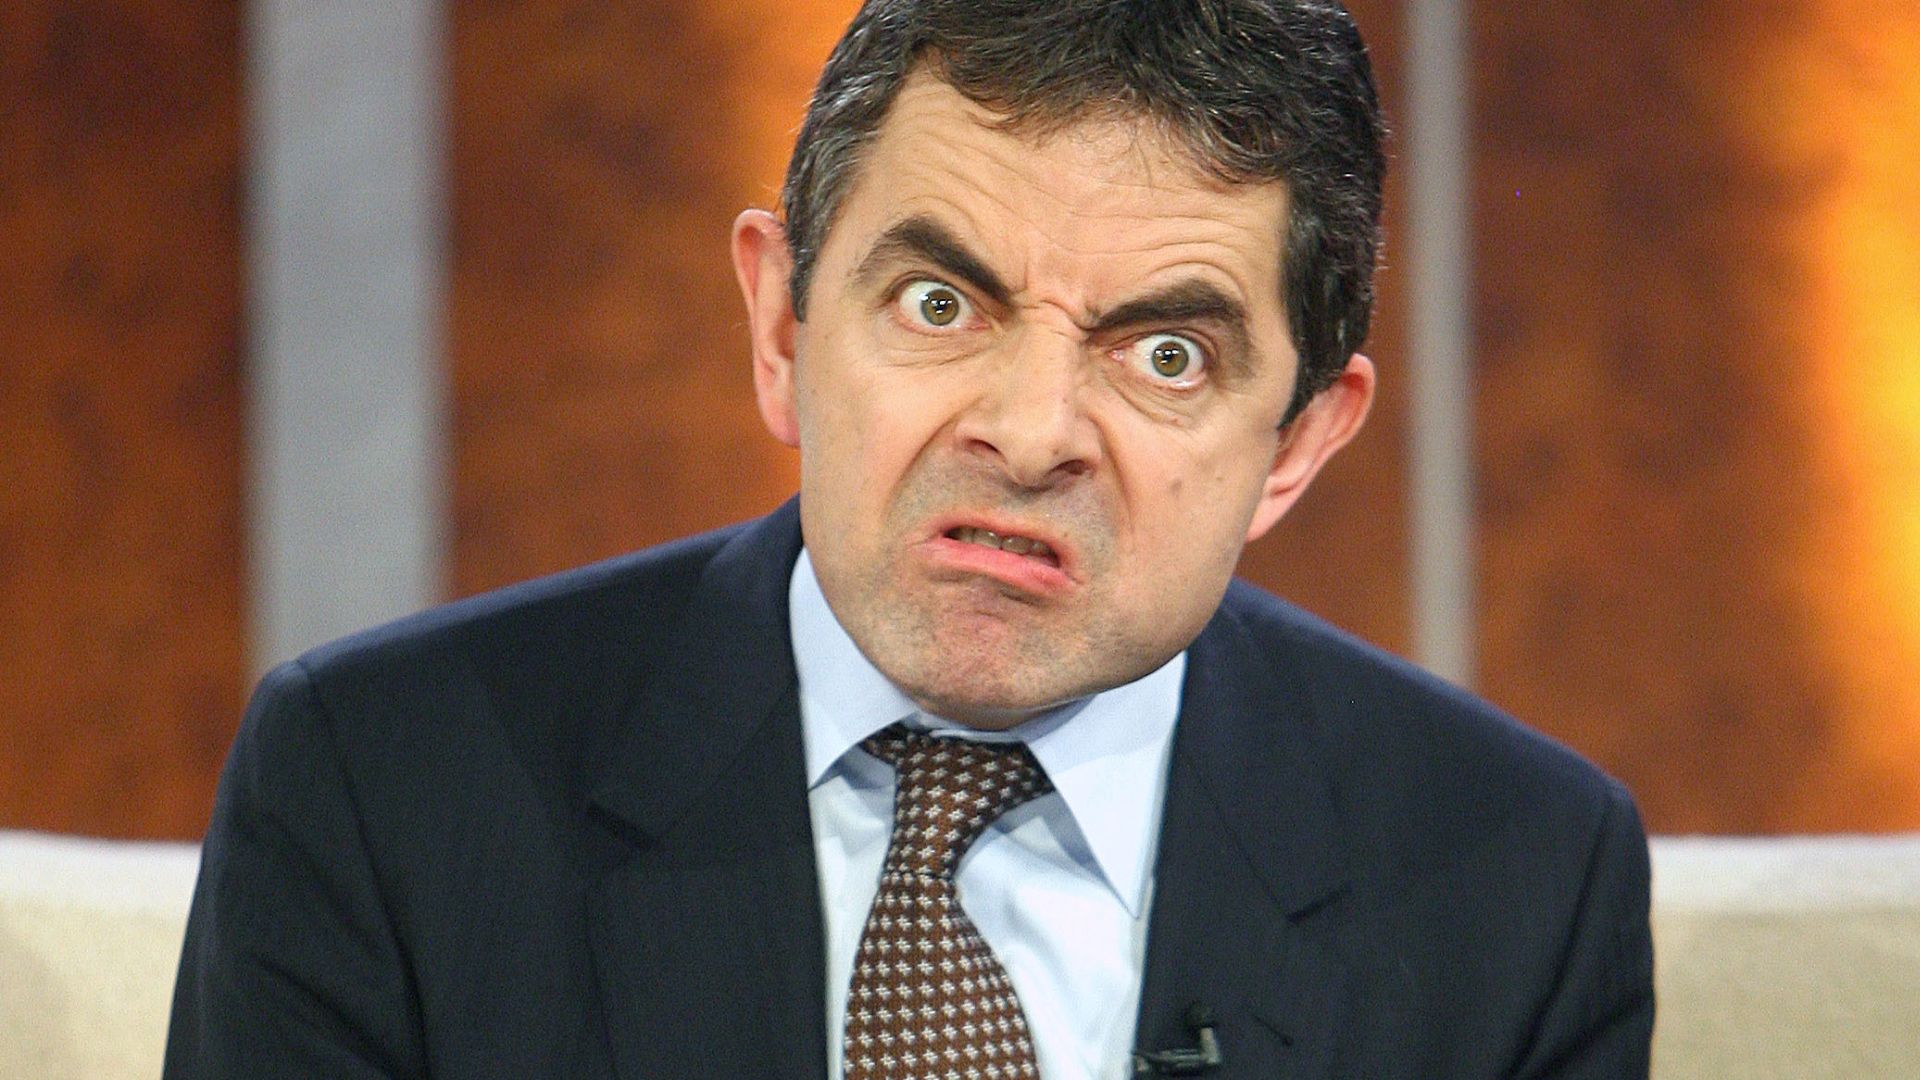 Rowan Atkinson Making A Funny Facial Expressions